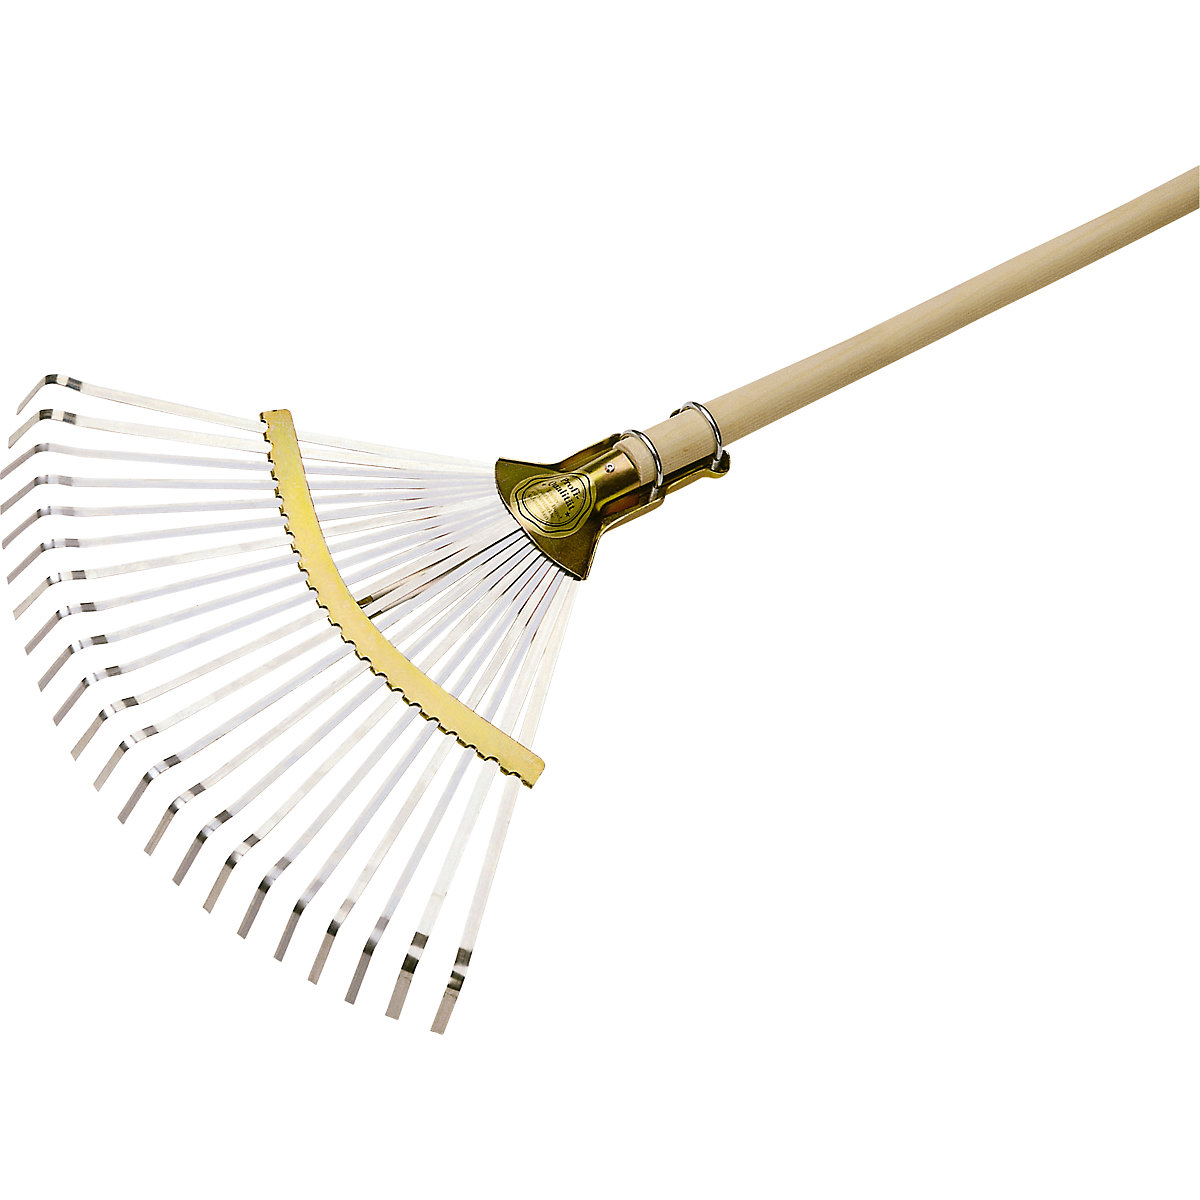 Professional leaf rake – FLORA